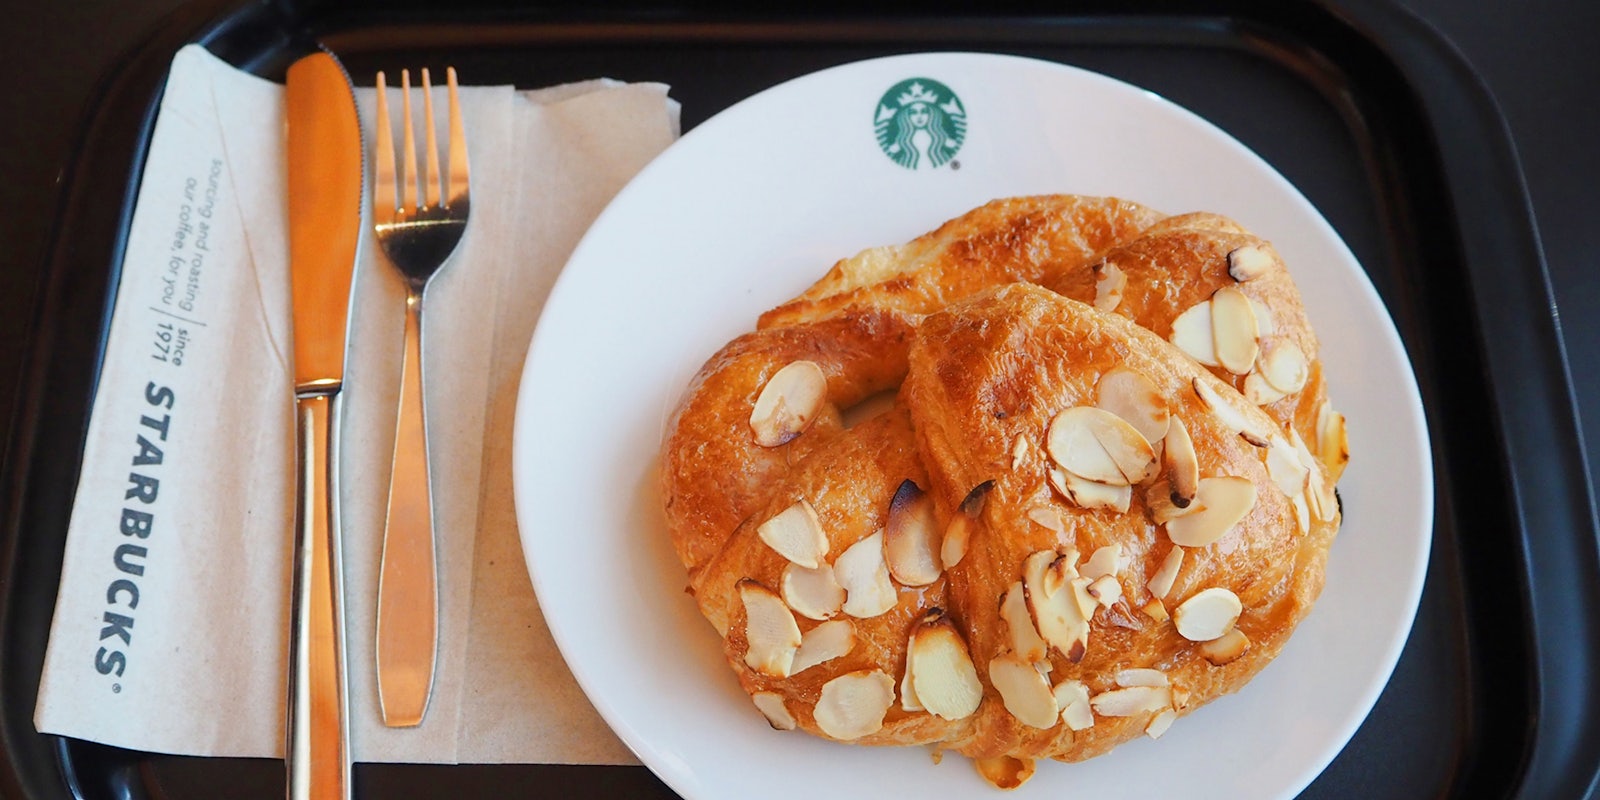 Starbucks Almond Croissant on Starbucks plate on black food tray